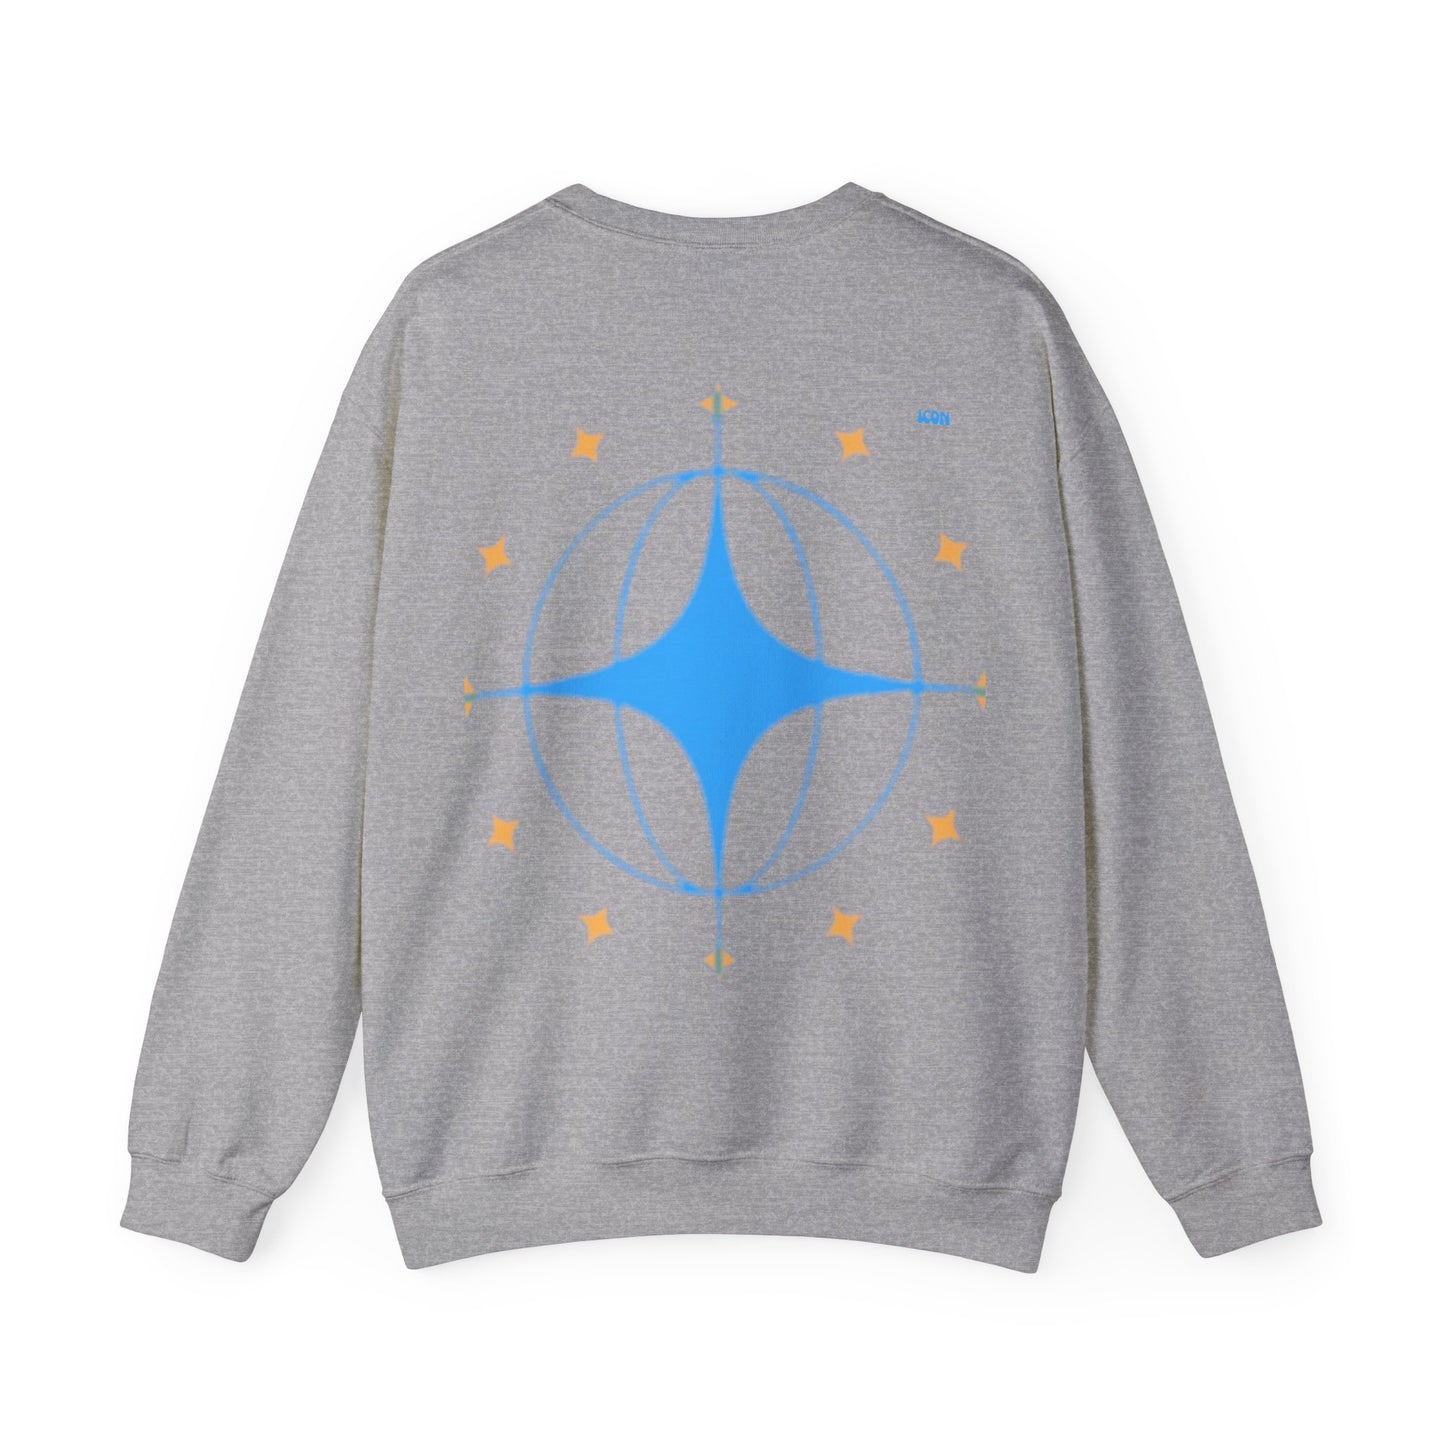 inhsane icon series 'icon star' sweatshirt